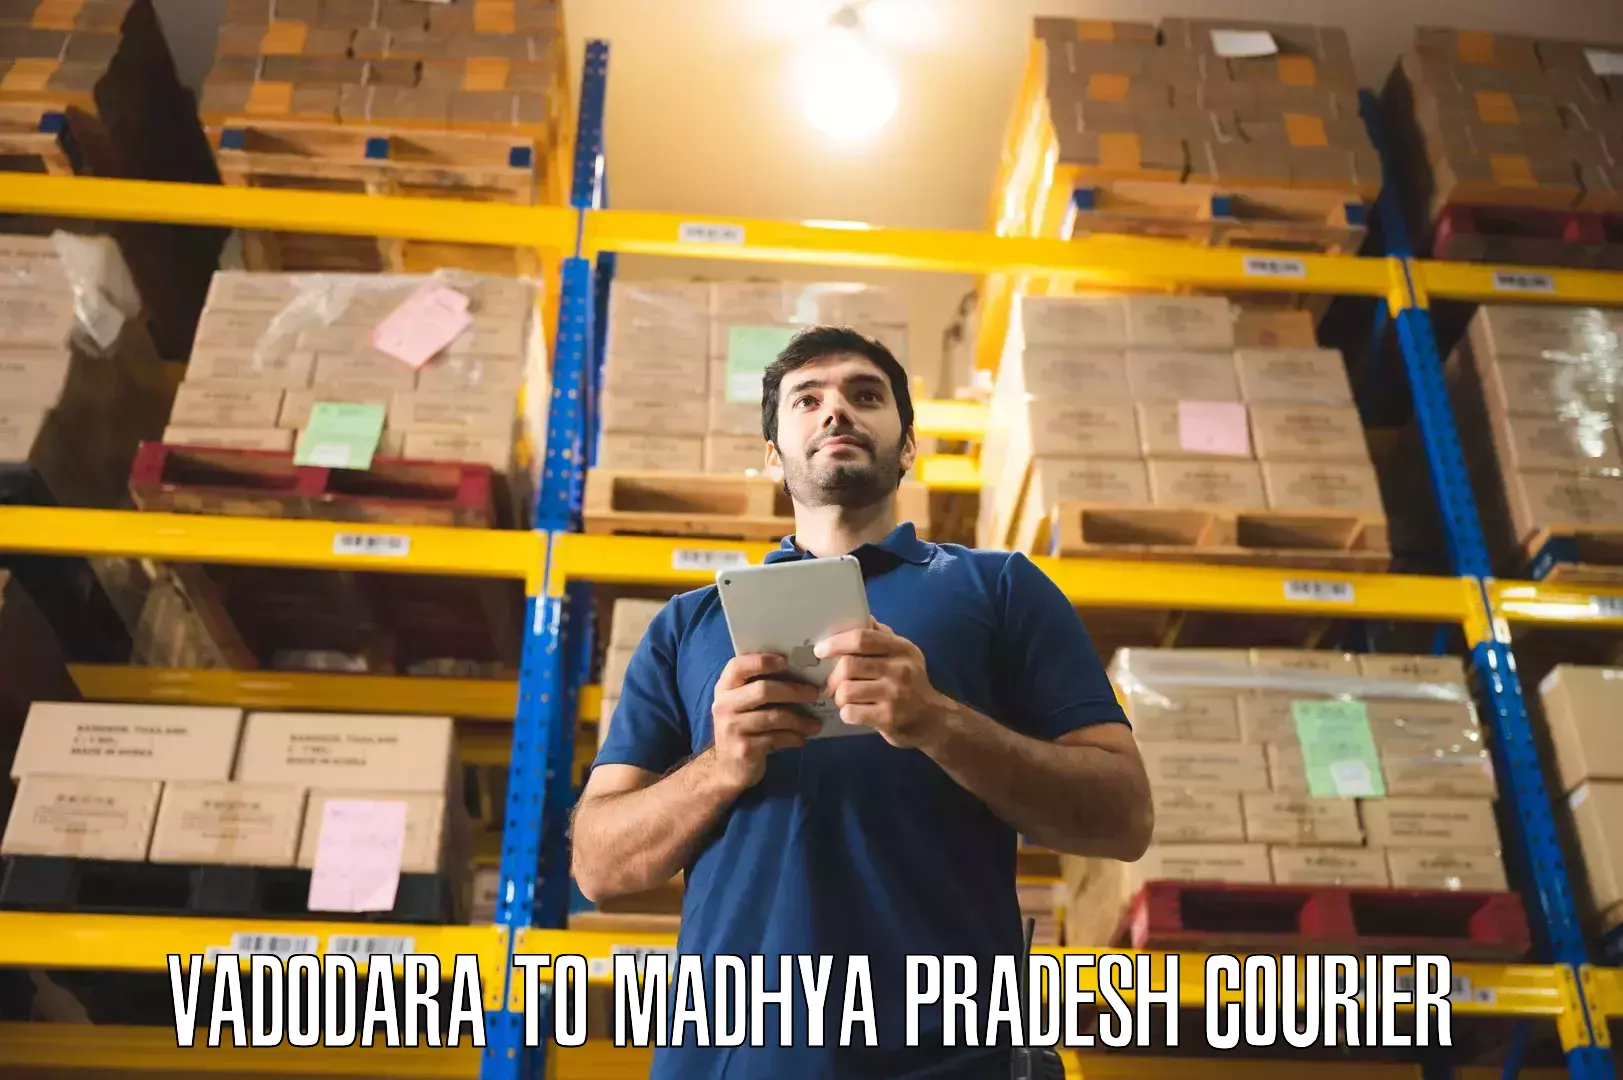 Furniture moving experts Vadodara to Madhya Pradesh